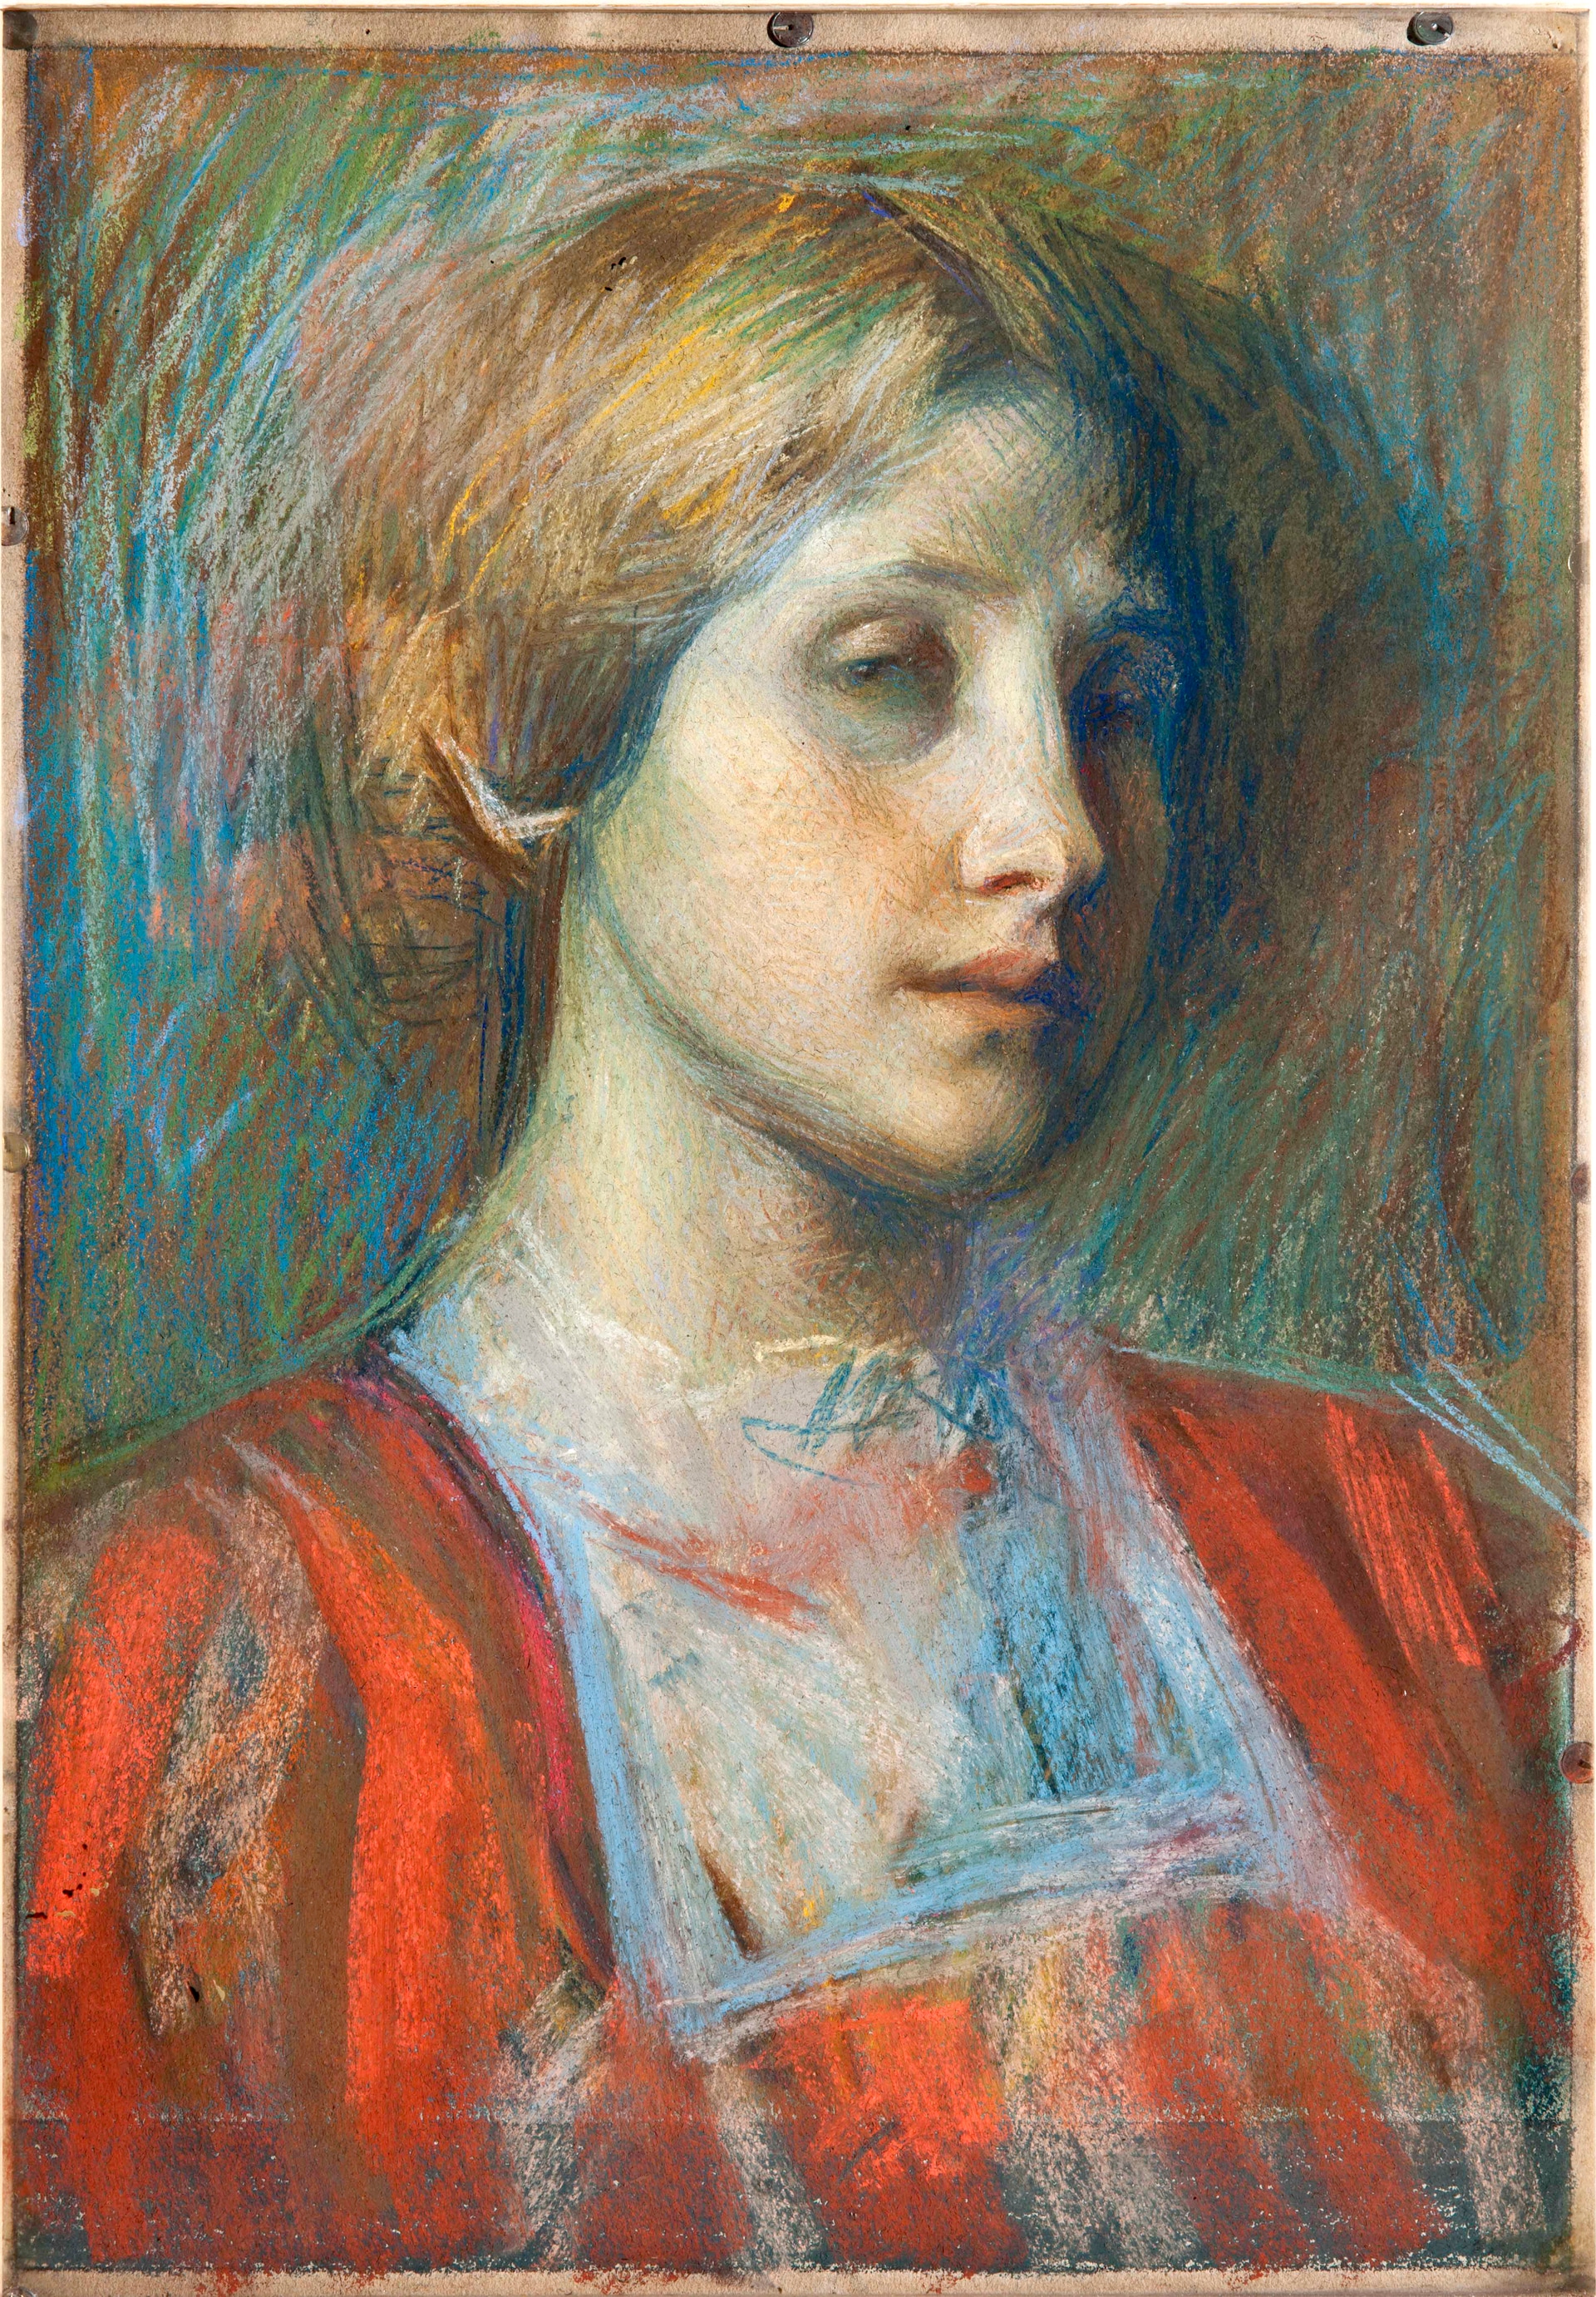 Umberto Boccioni, Ritratto di giovane donna, 1907-1908, pastello su tela. Collezione privata